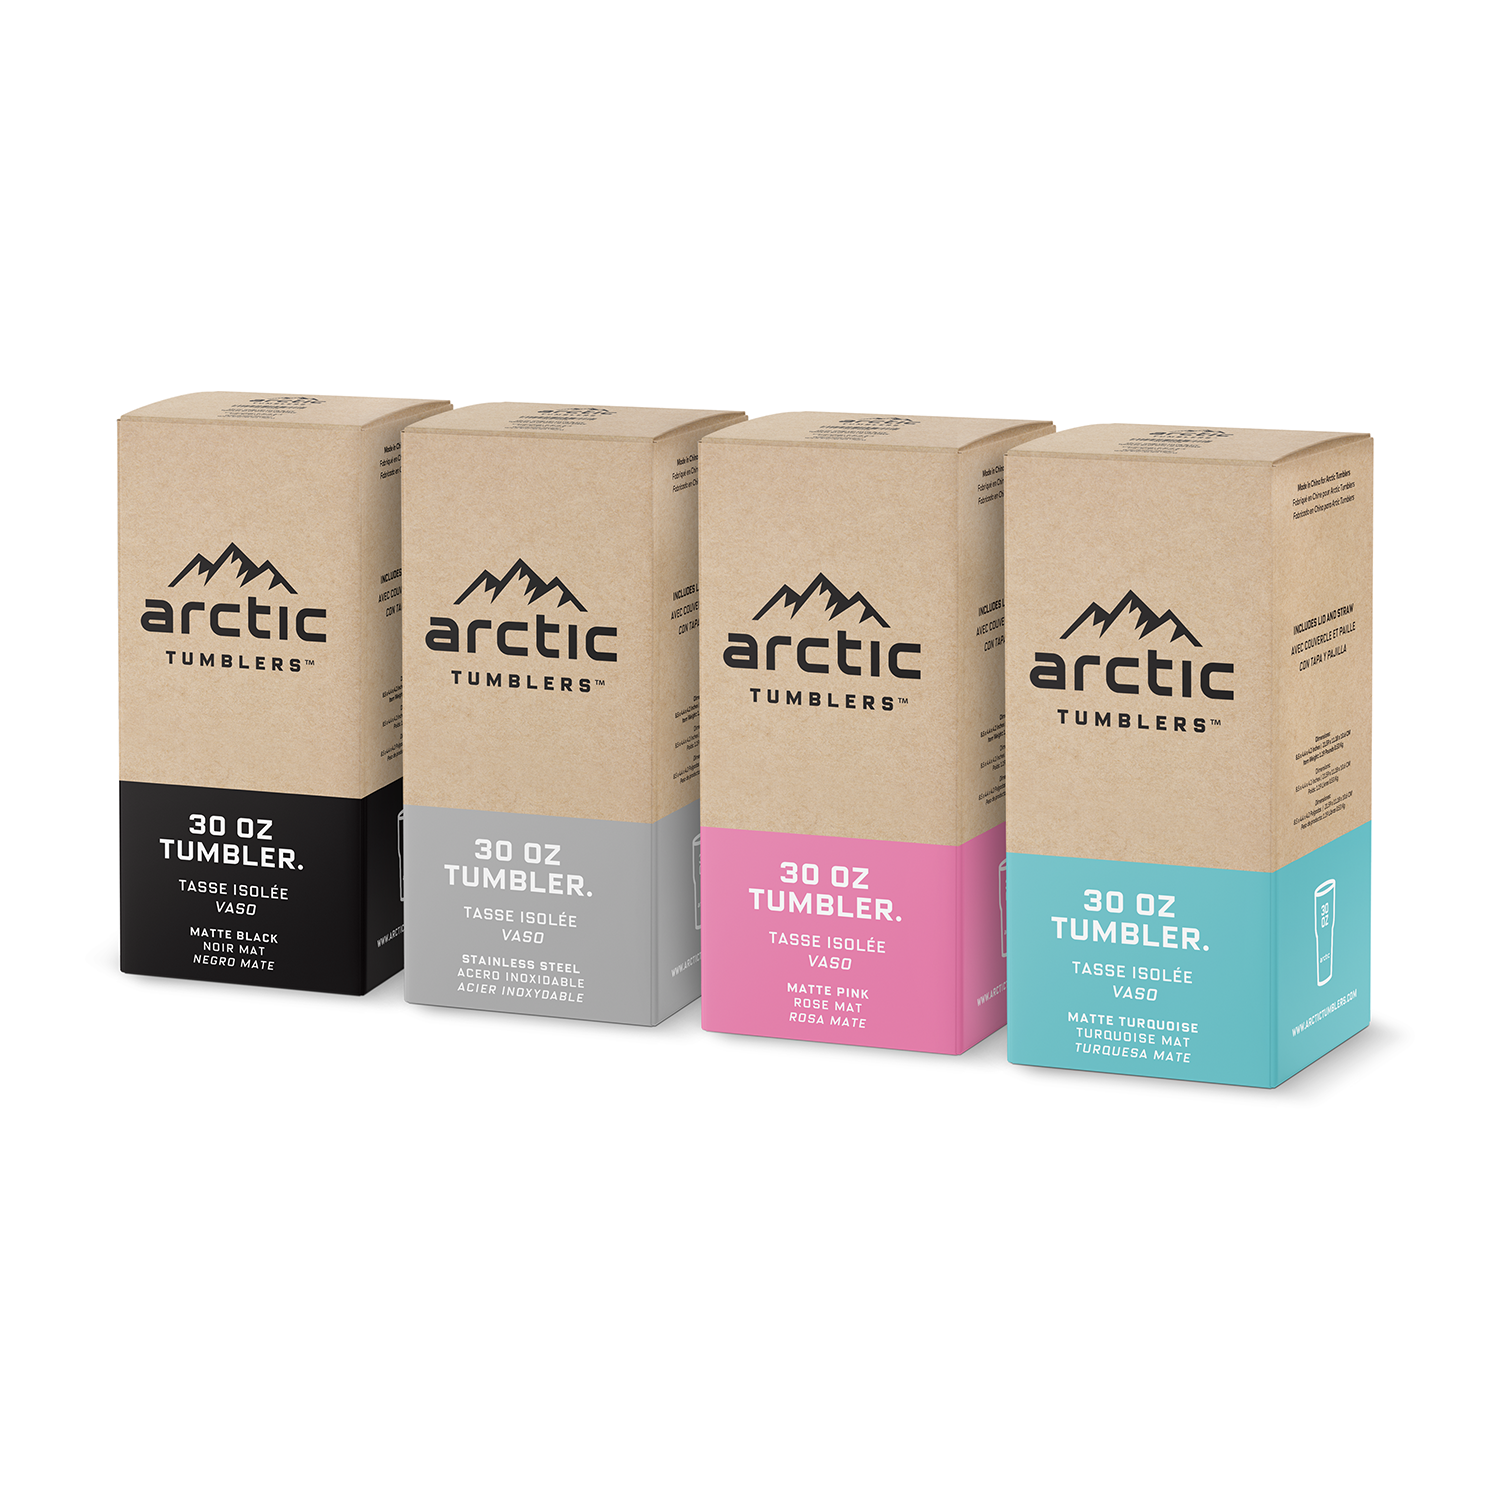 Bundle Pack: 4 Tumblers in 4 Colors – Arctic Tumblers